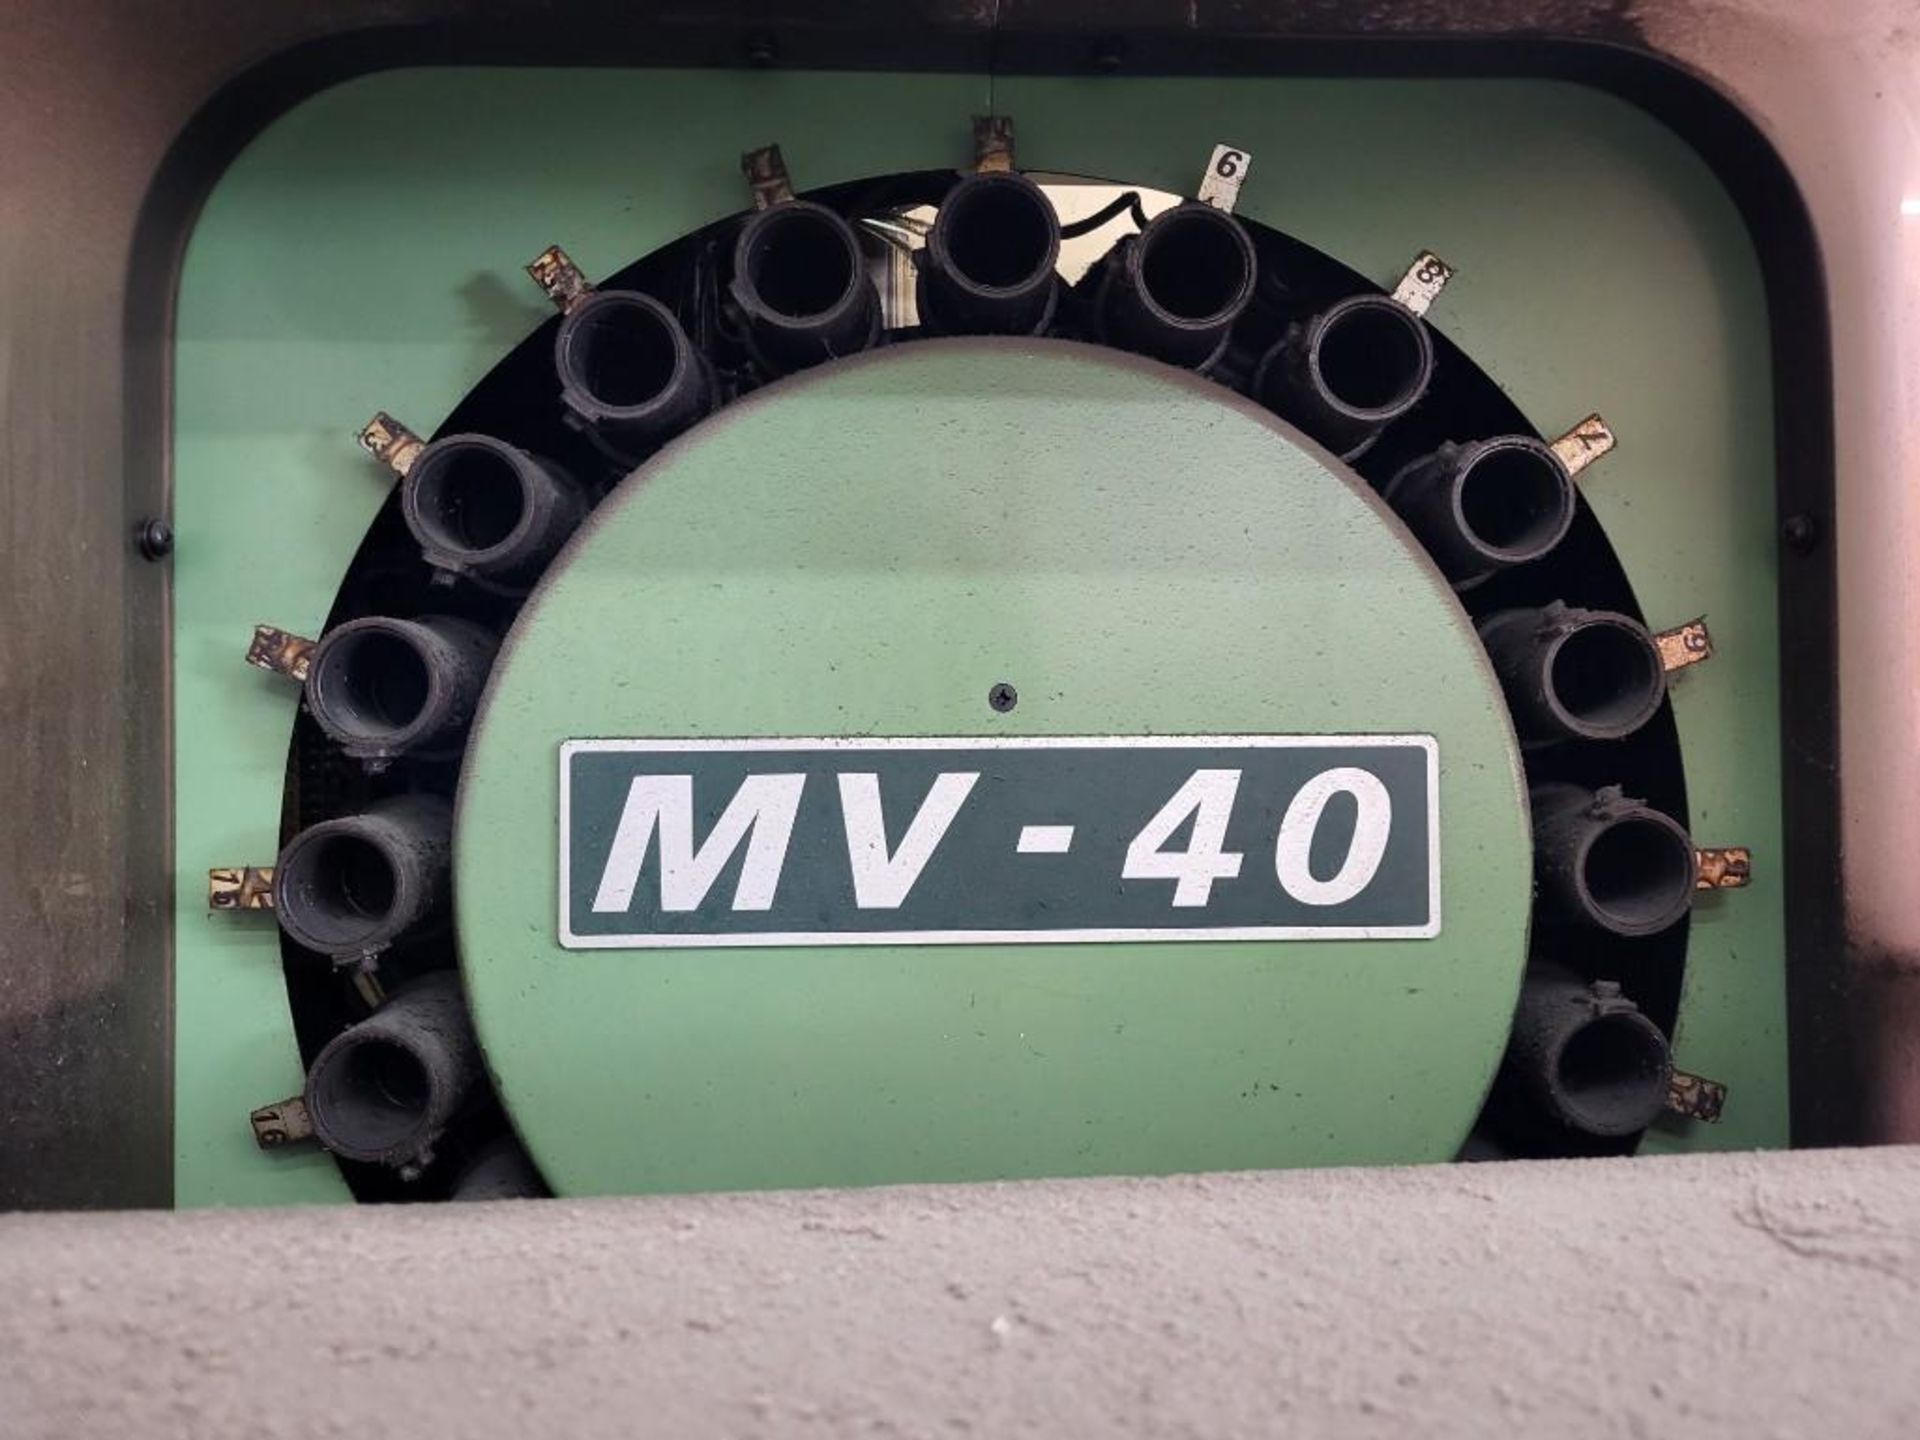 MORI SEIKI MV-40 VERTICAL MACHINING CENTER - Image 11 of 18